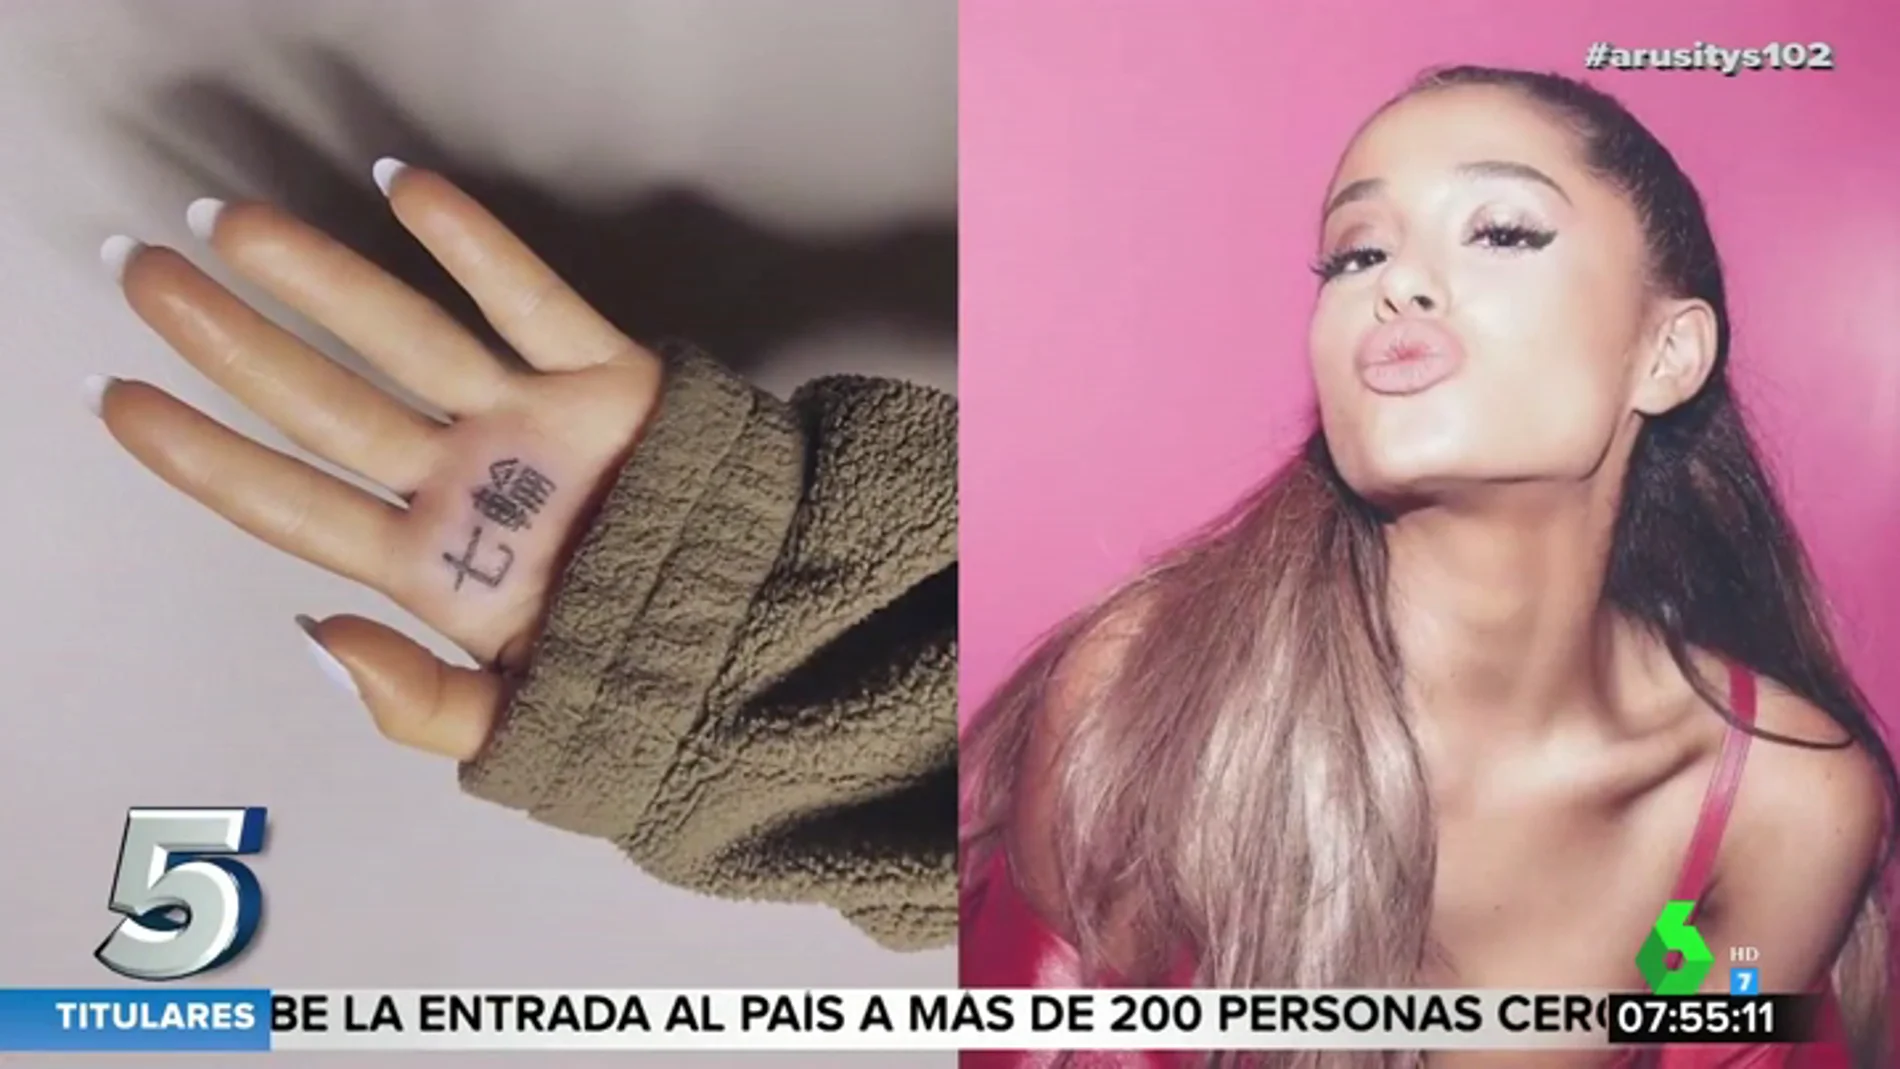 El error de traducción al japonés en el tatuaje de Ariana Grande que se ha hecho viral